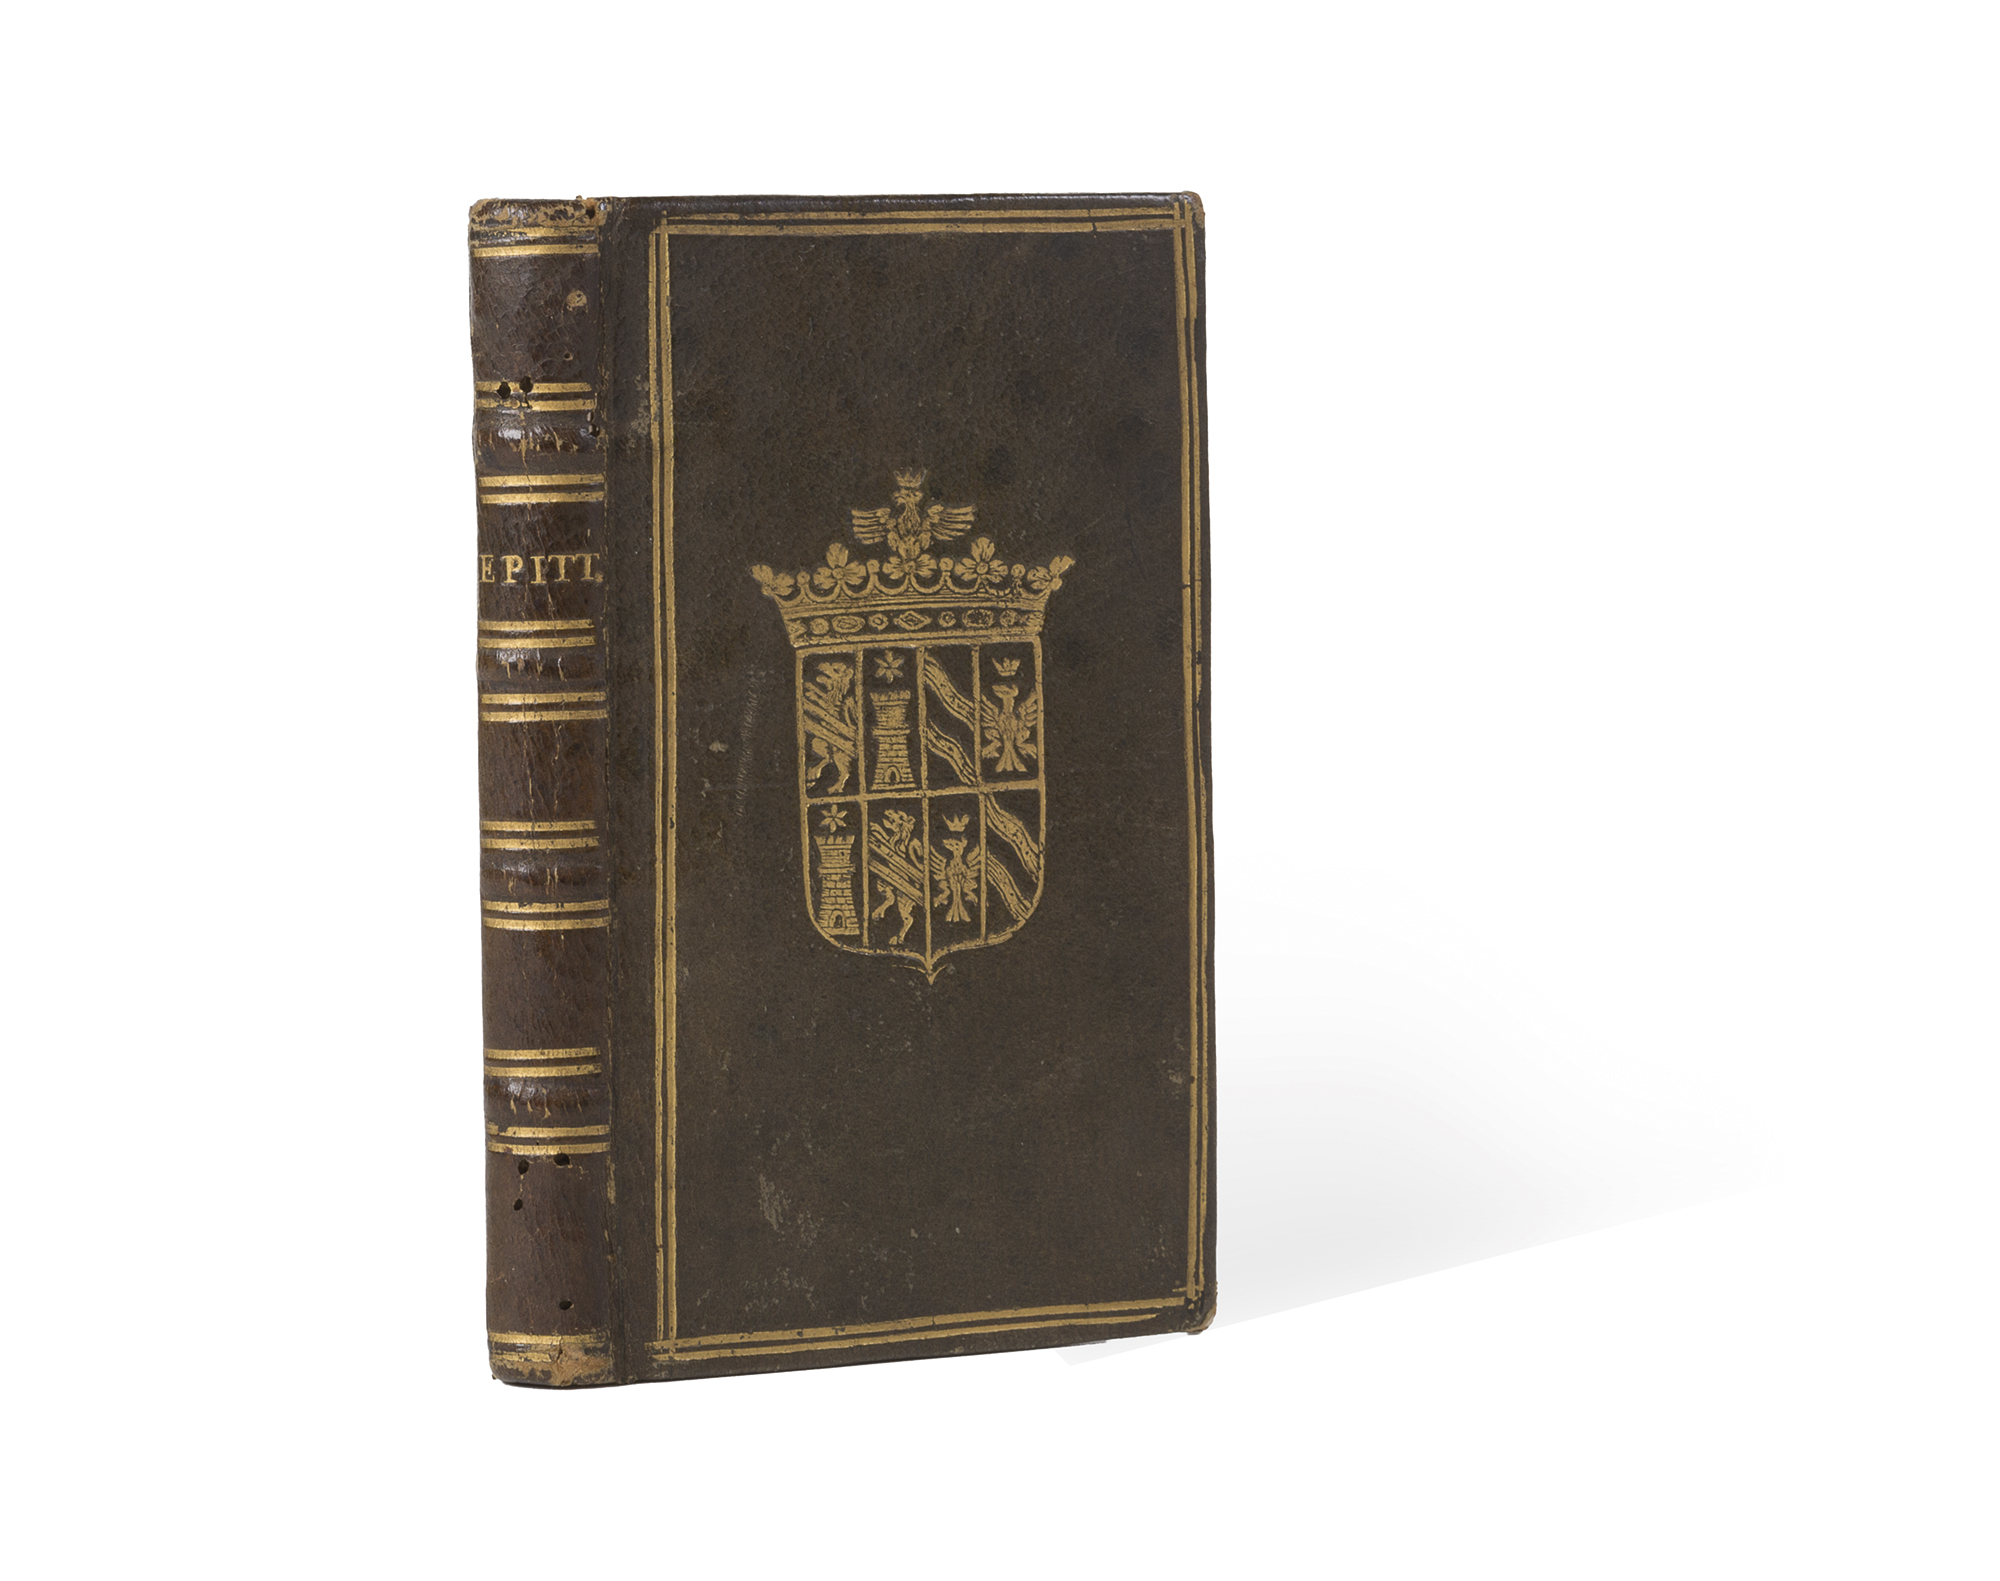 Manuale di Epitteto filosofo, ouero arte di correggere l'humana vita -  Libri, Autografi e Stampe – Asta 127 - Minerva Auctions